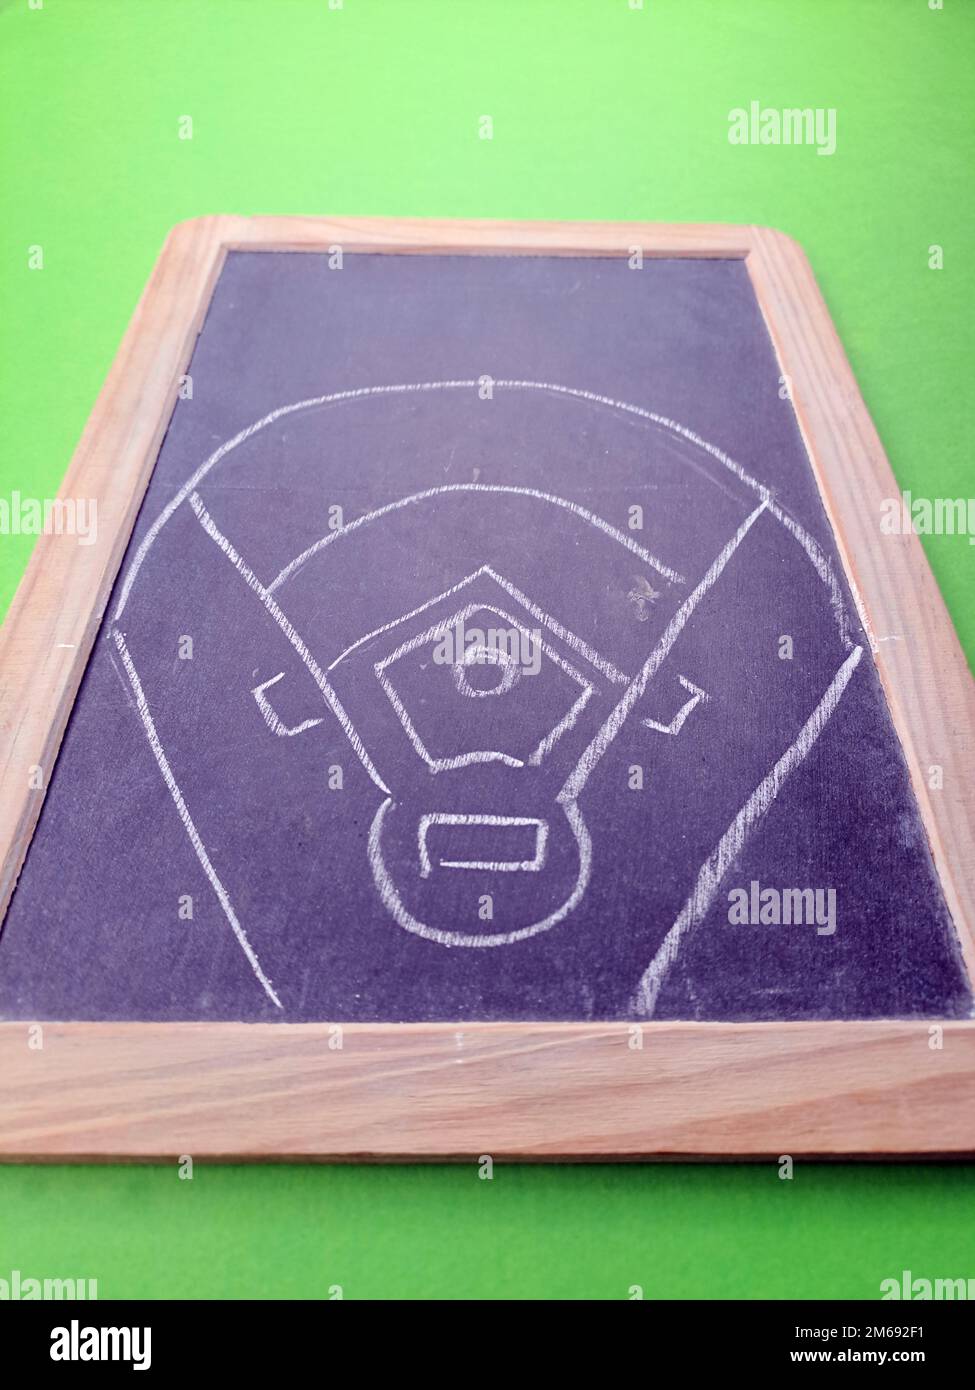 Illustrazione del campo da baseball sulla lavagna, sfondo di colore verde. Foto Stock